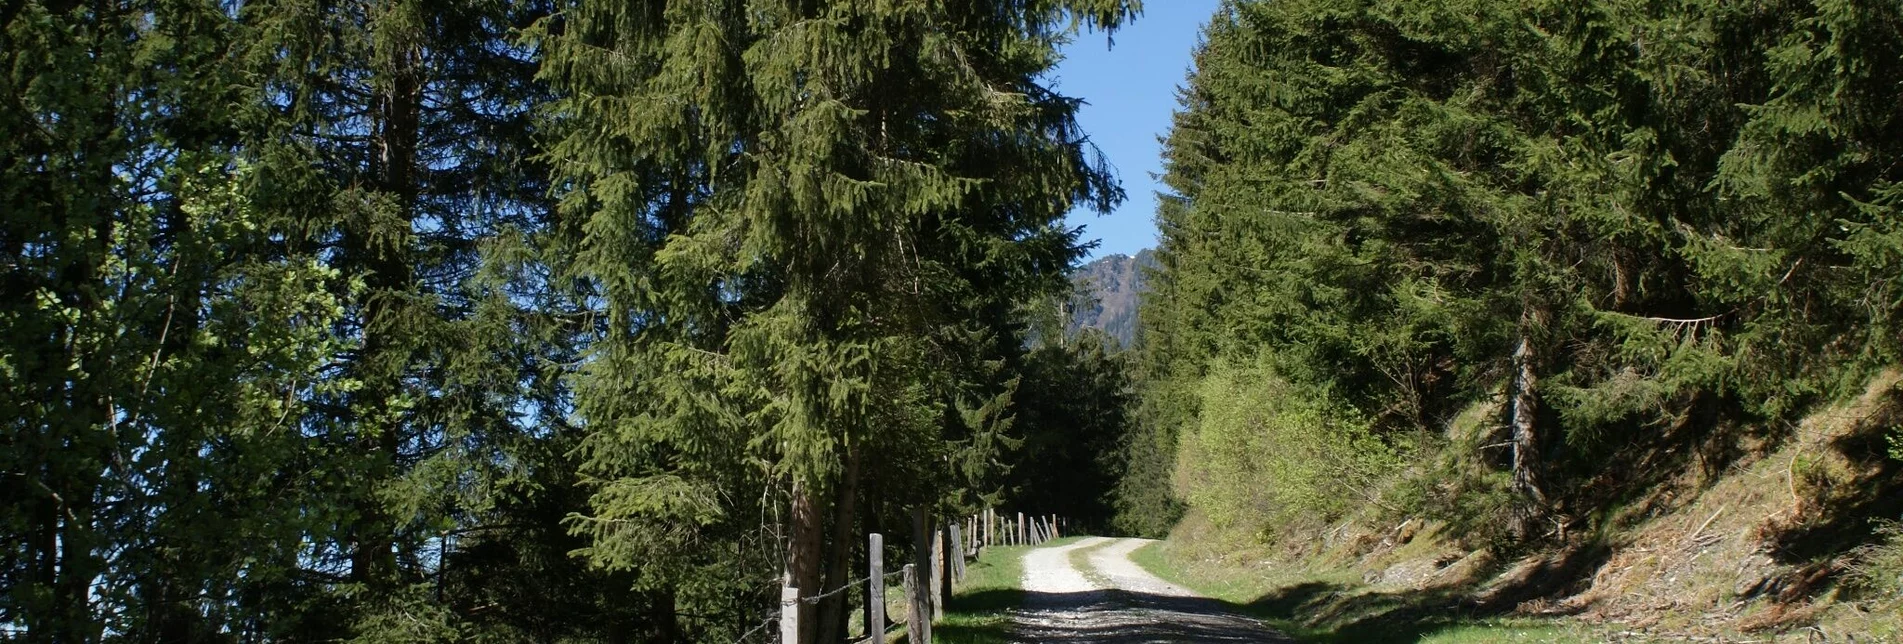 Hiking route Fischeralmweg - Touren-Impression #1 | © Erlebnisregion Schladming-Dachstein